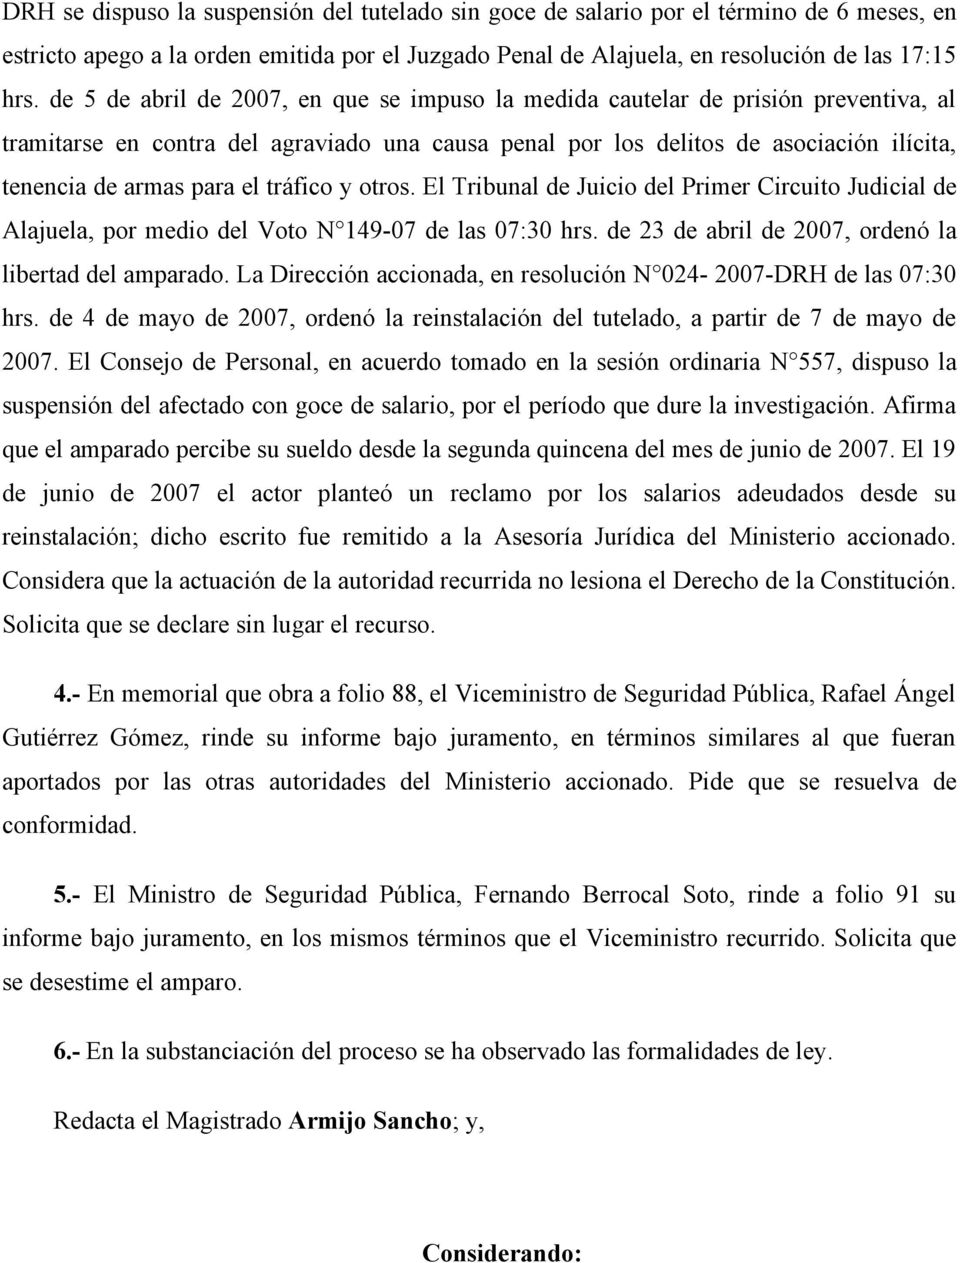 el tráfico y otros. El Tribunal de Juicio del Primer Circuito Judicial de Alajuela, por medio del Voto N 149-07 de las 07:30 hrs. de 23 de abril de 2007, ordenó la libertad del amparado.